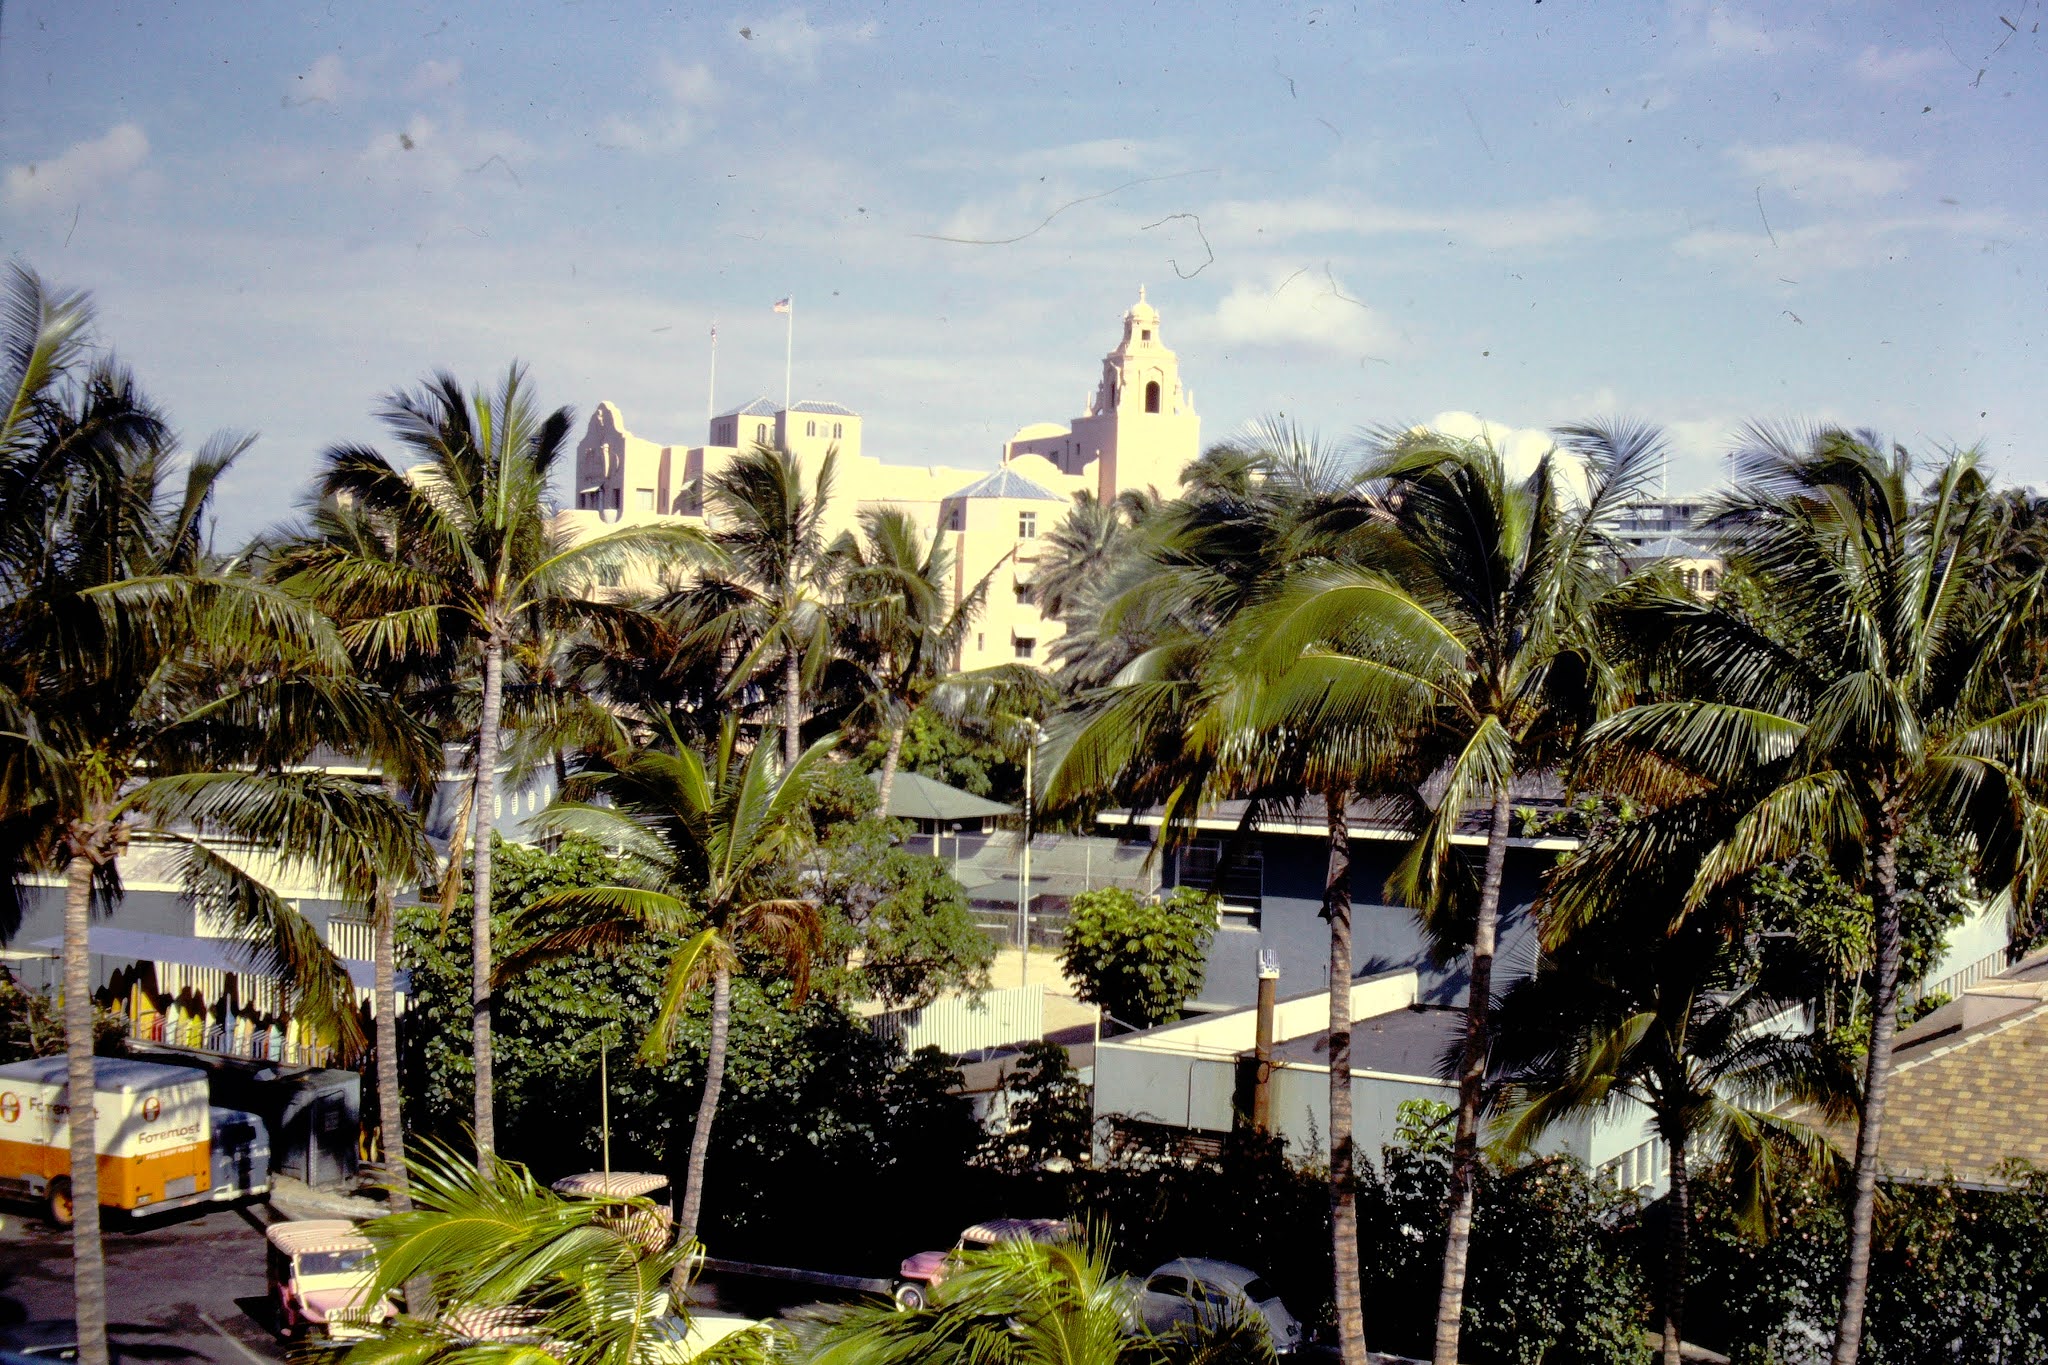 Royal Hawaiian Hotel - 1961